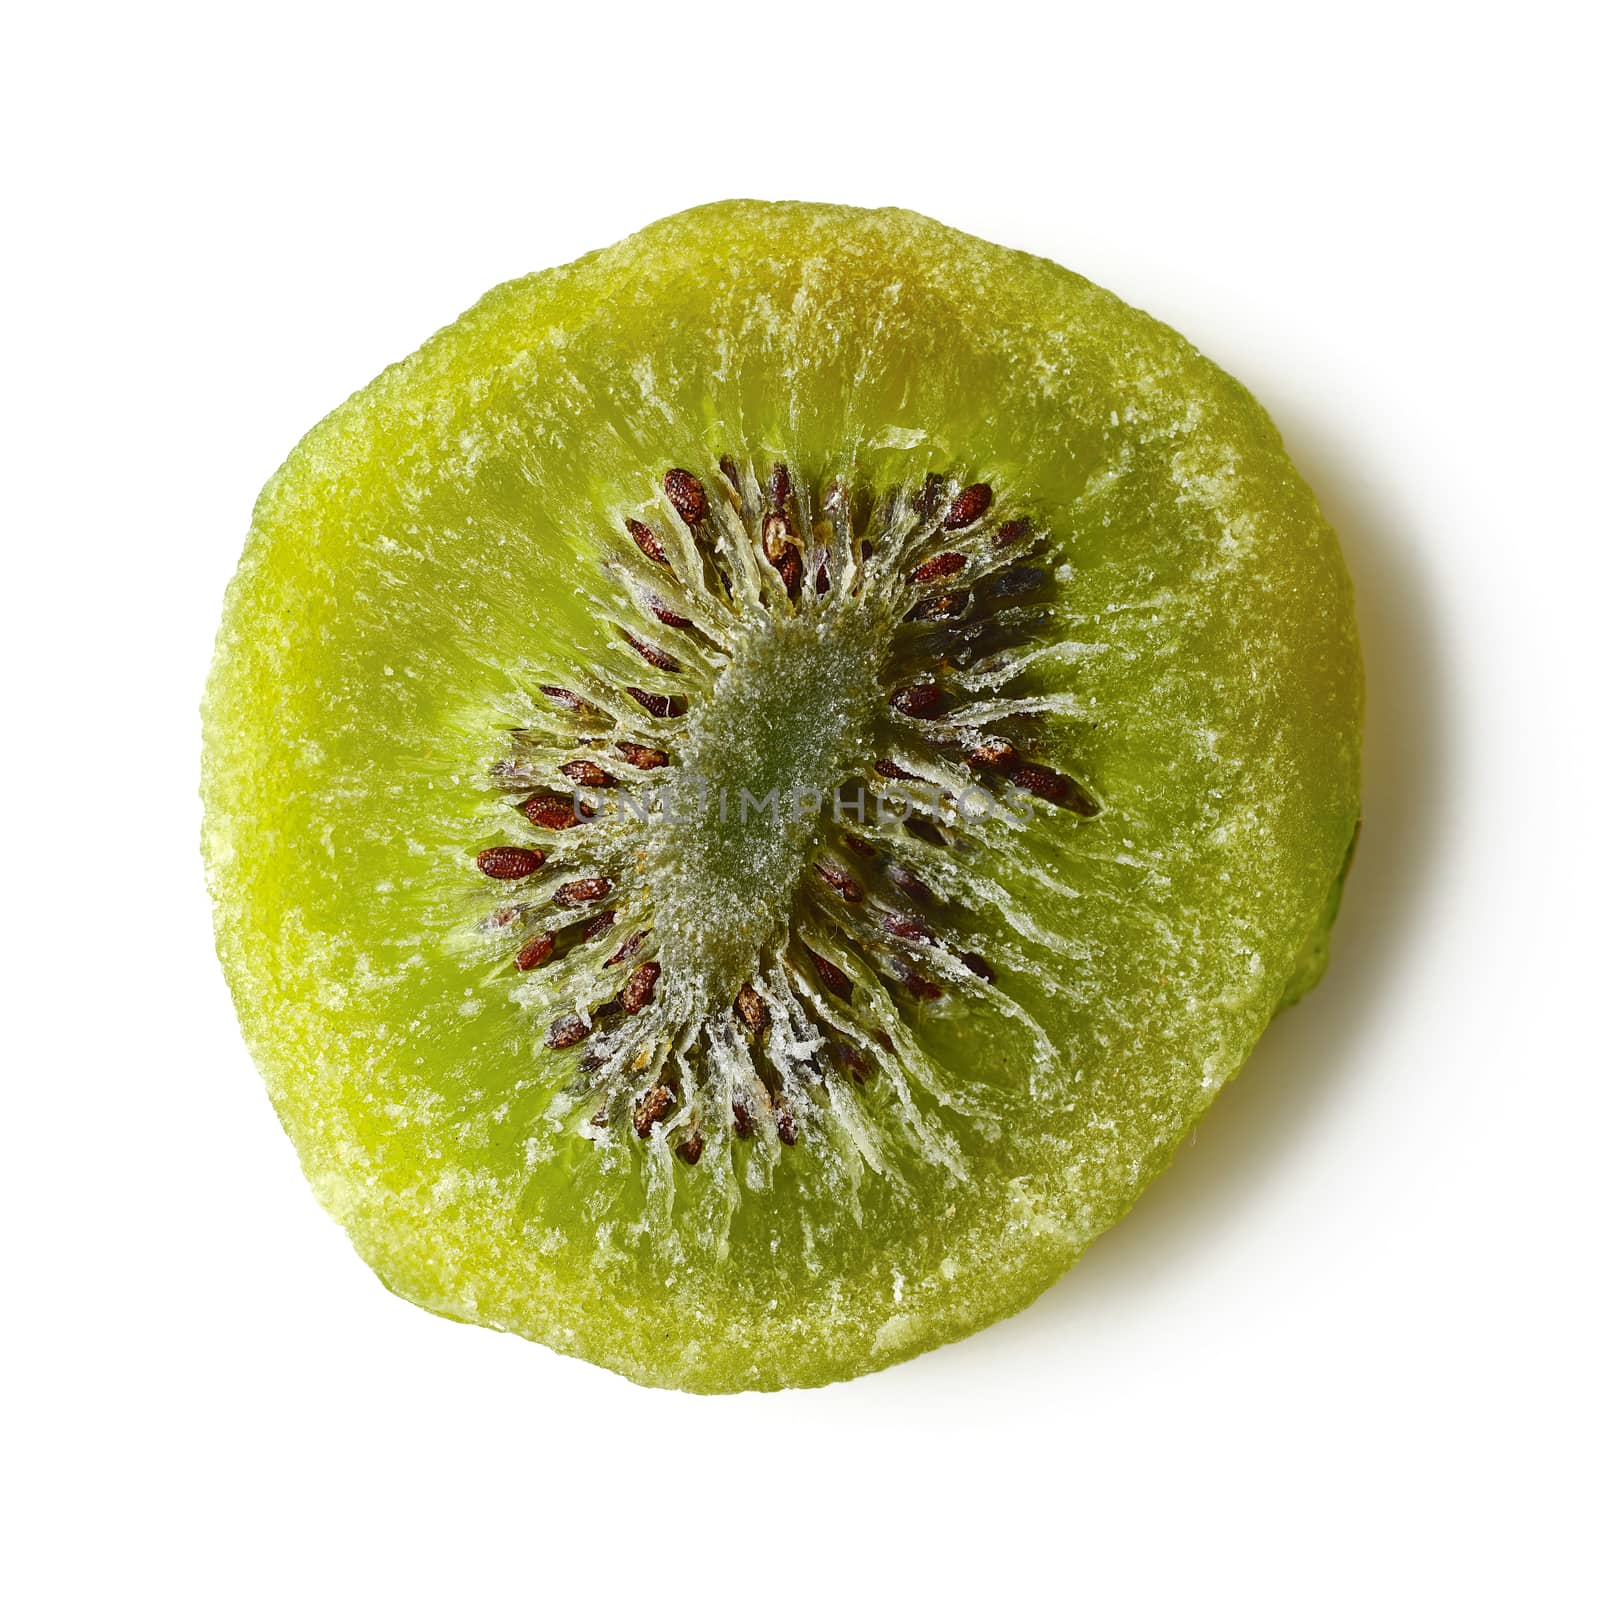 Dried kiwi isolated on white